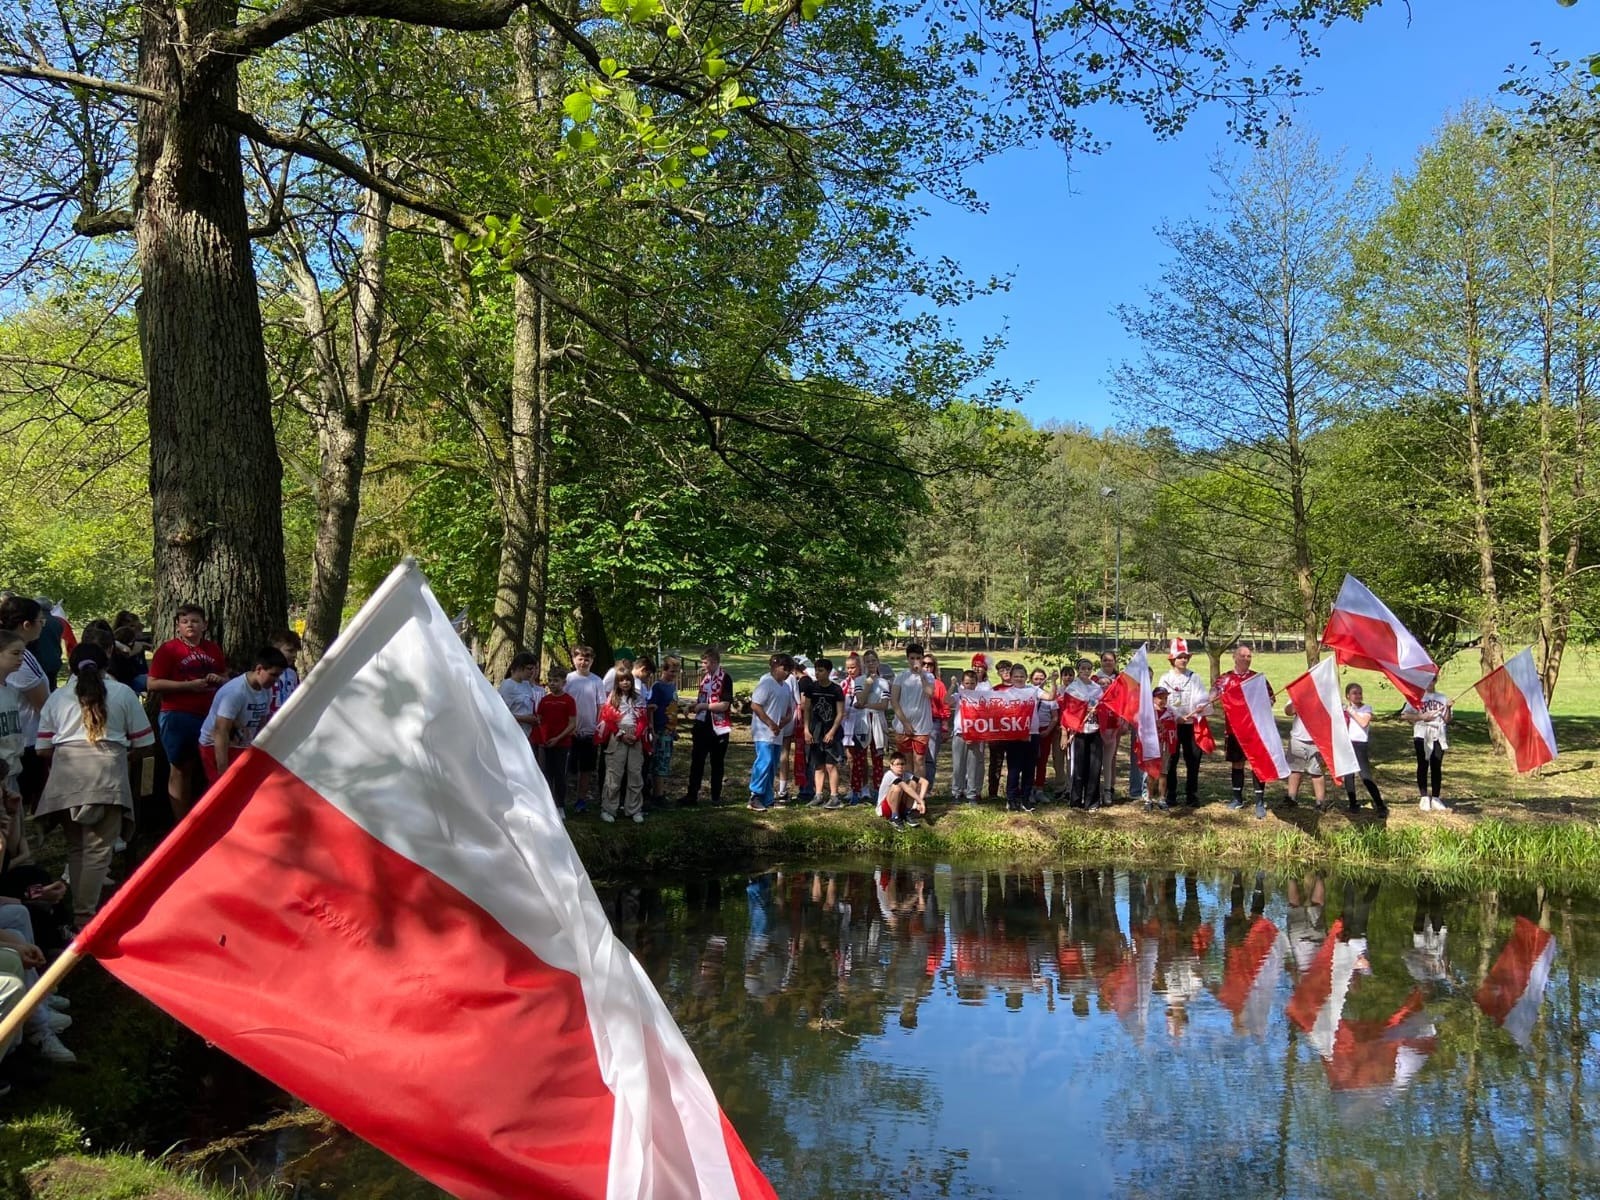 Uczniowie w biało czerwonych strojach z flagami polski pozują przy stawie do zdjęcia.